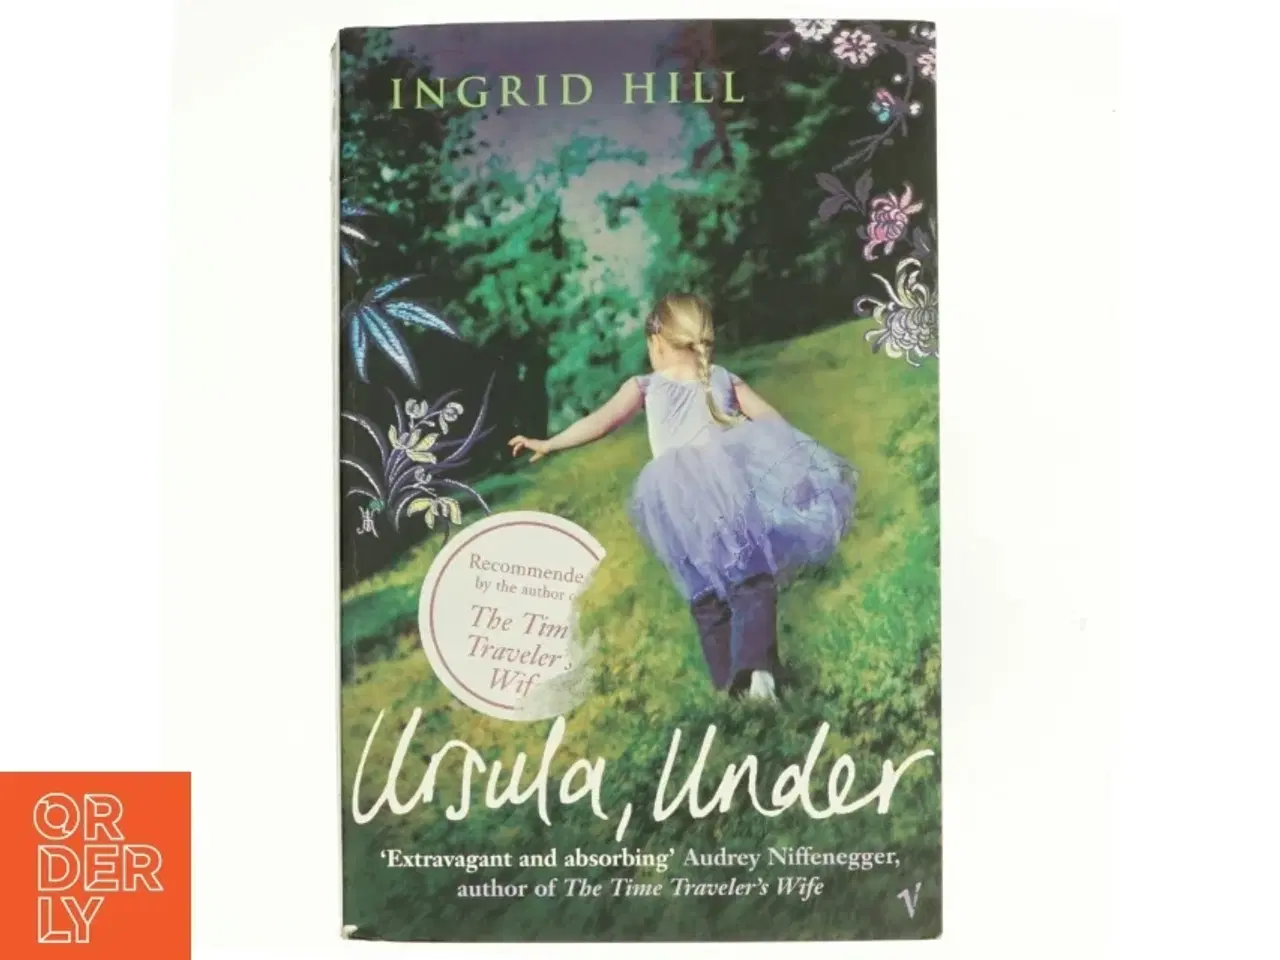 Billede 1 - Ursula, Under af Ingrid Hill (Bog)